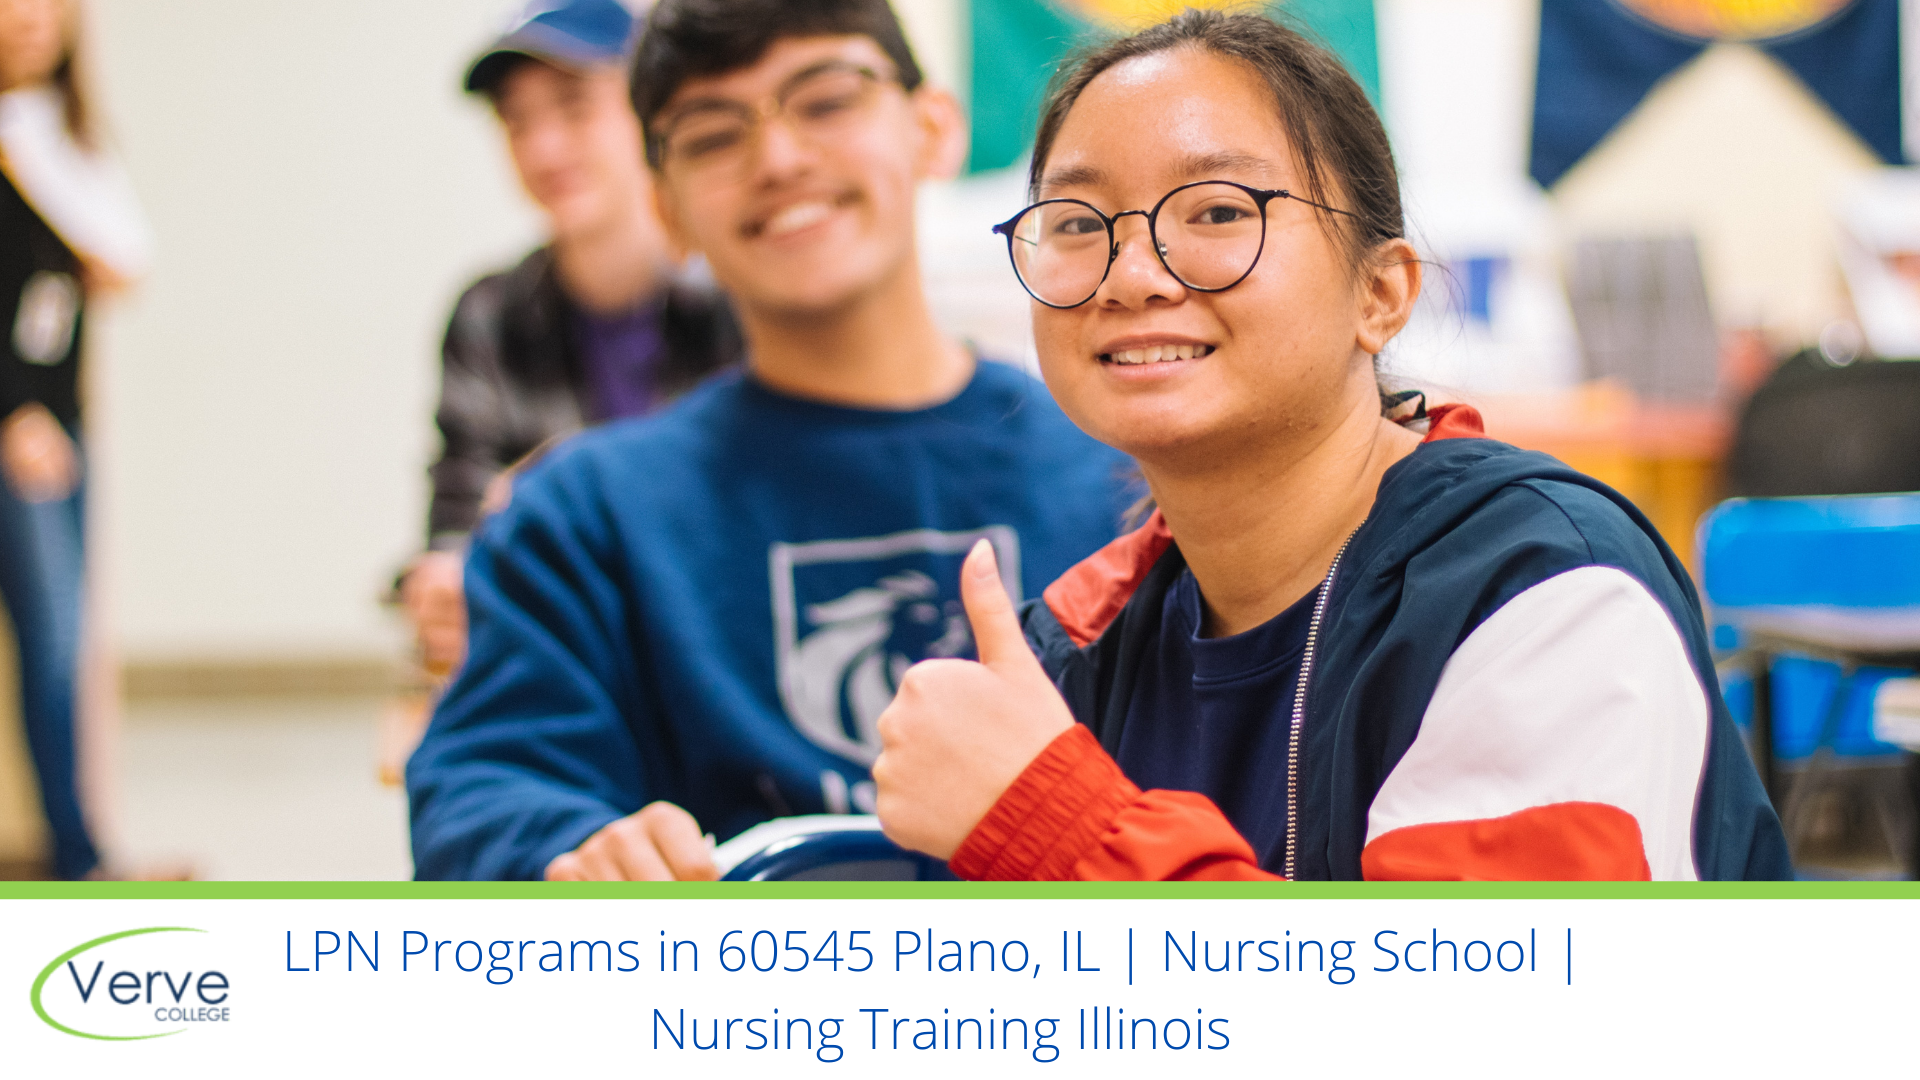 LPN Programs in 60545 Plano, IL | Nursing School |  Nursing Training Illinois